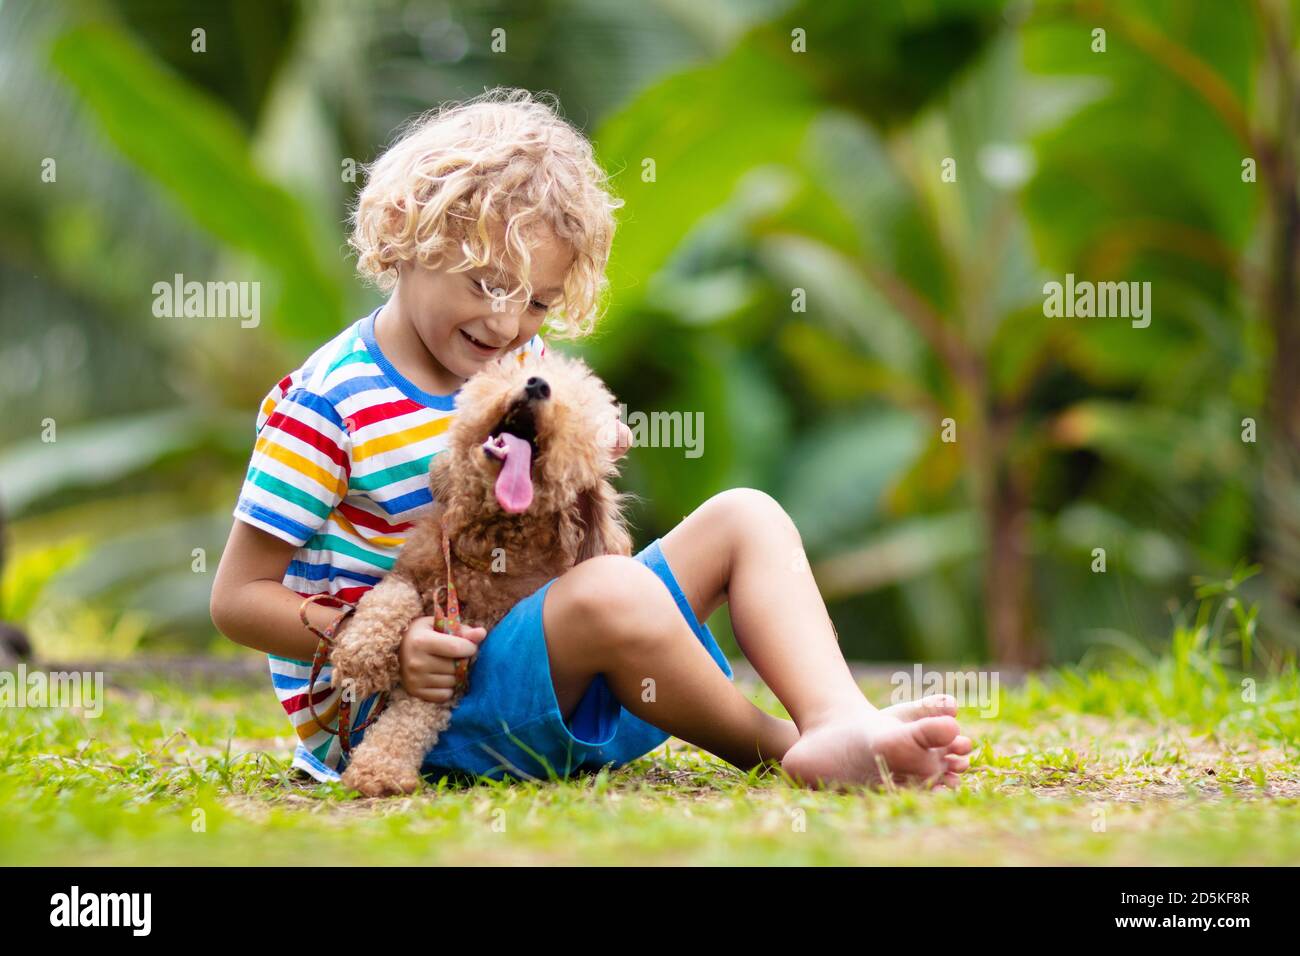 Kinder spielen mit niedlichem kleinen Welpen. Kinder und Babyhund spielen im sonnigen Sommergarten. Kleiner Junge, der Welpen hält. Kind mit Haustier. Familie und Haustiere o Stockfoto